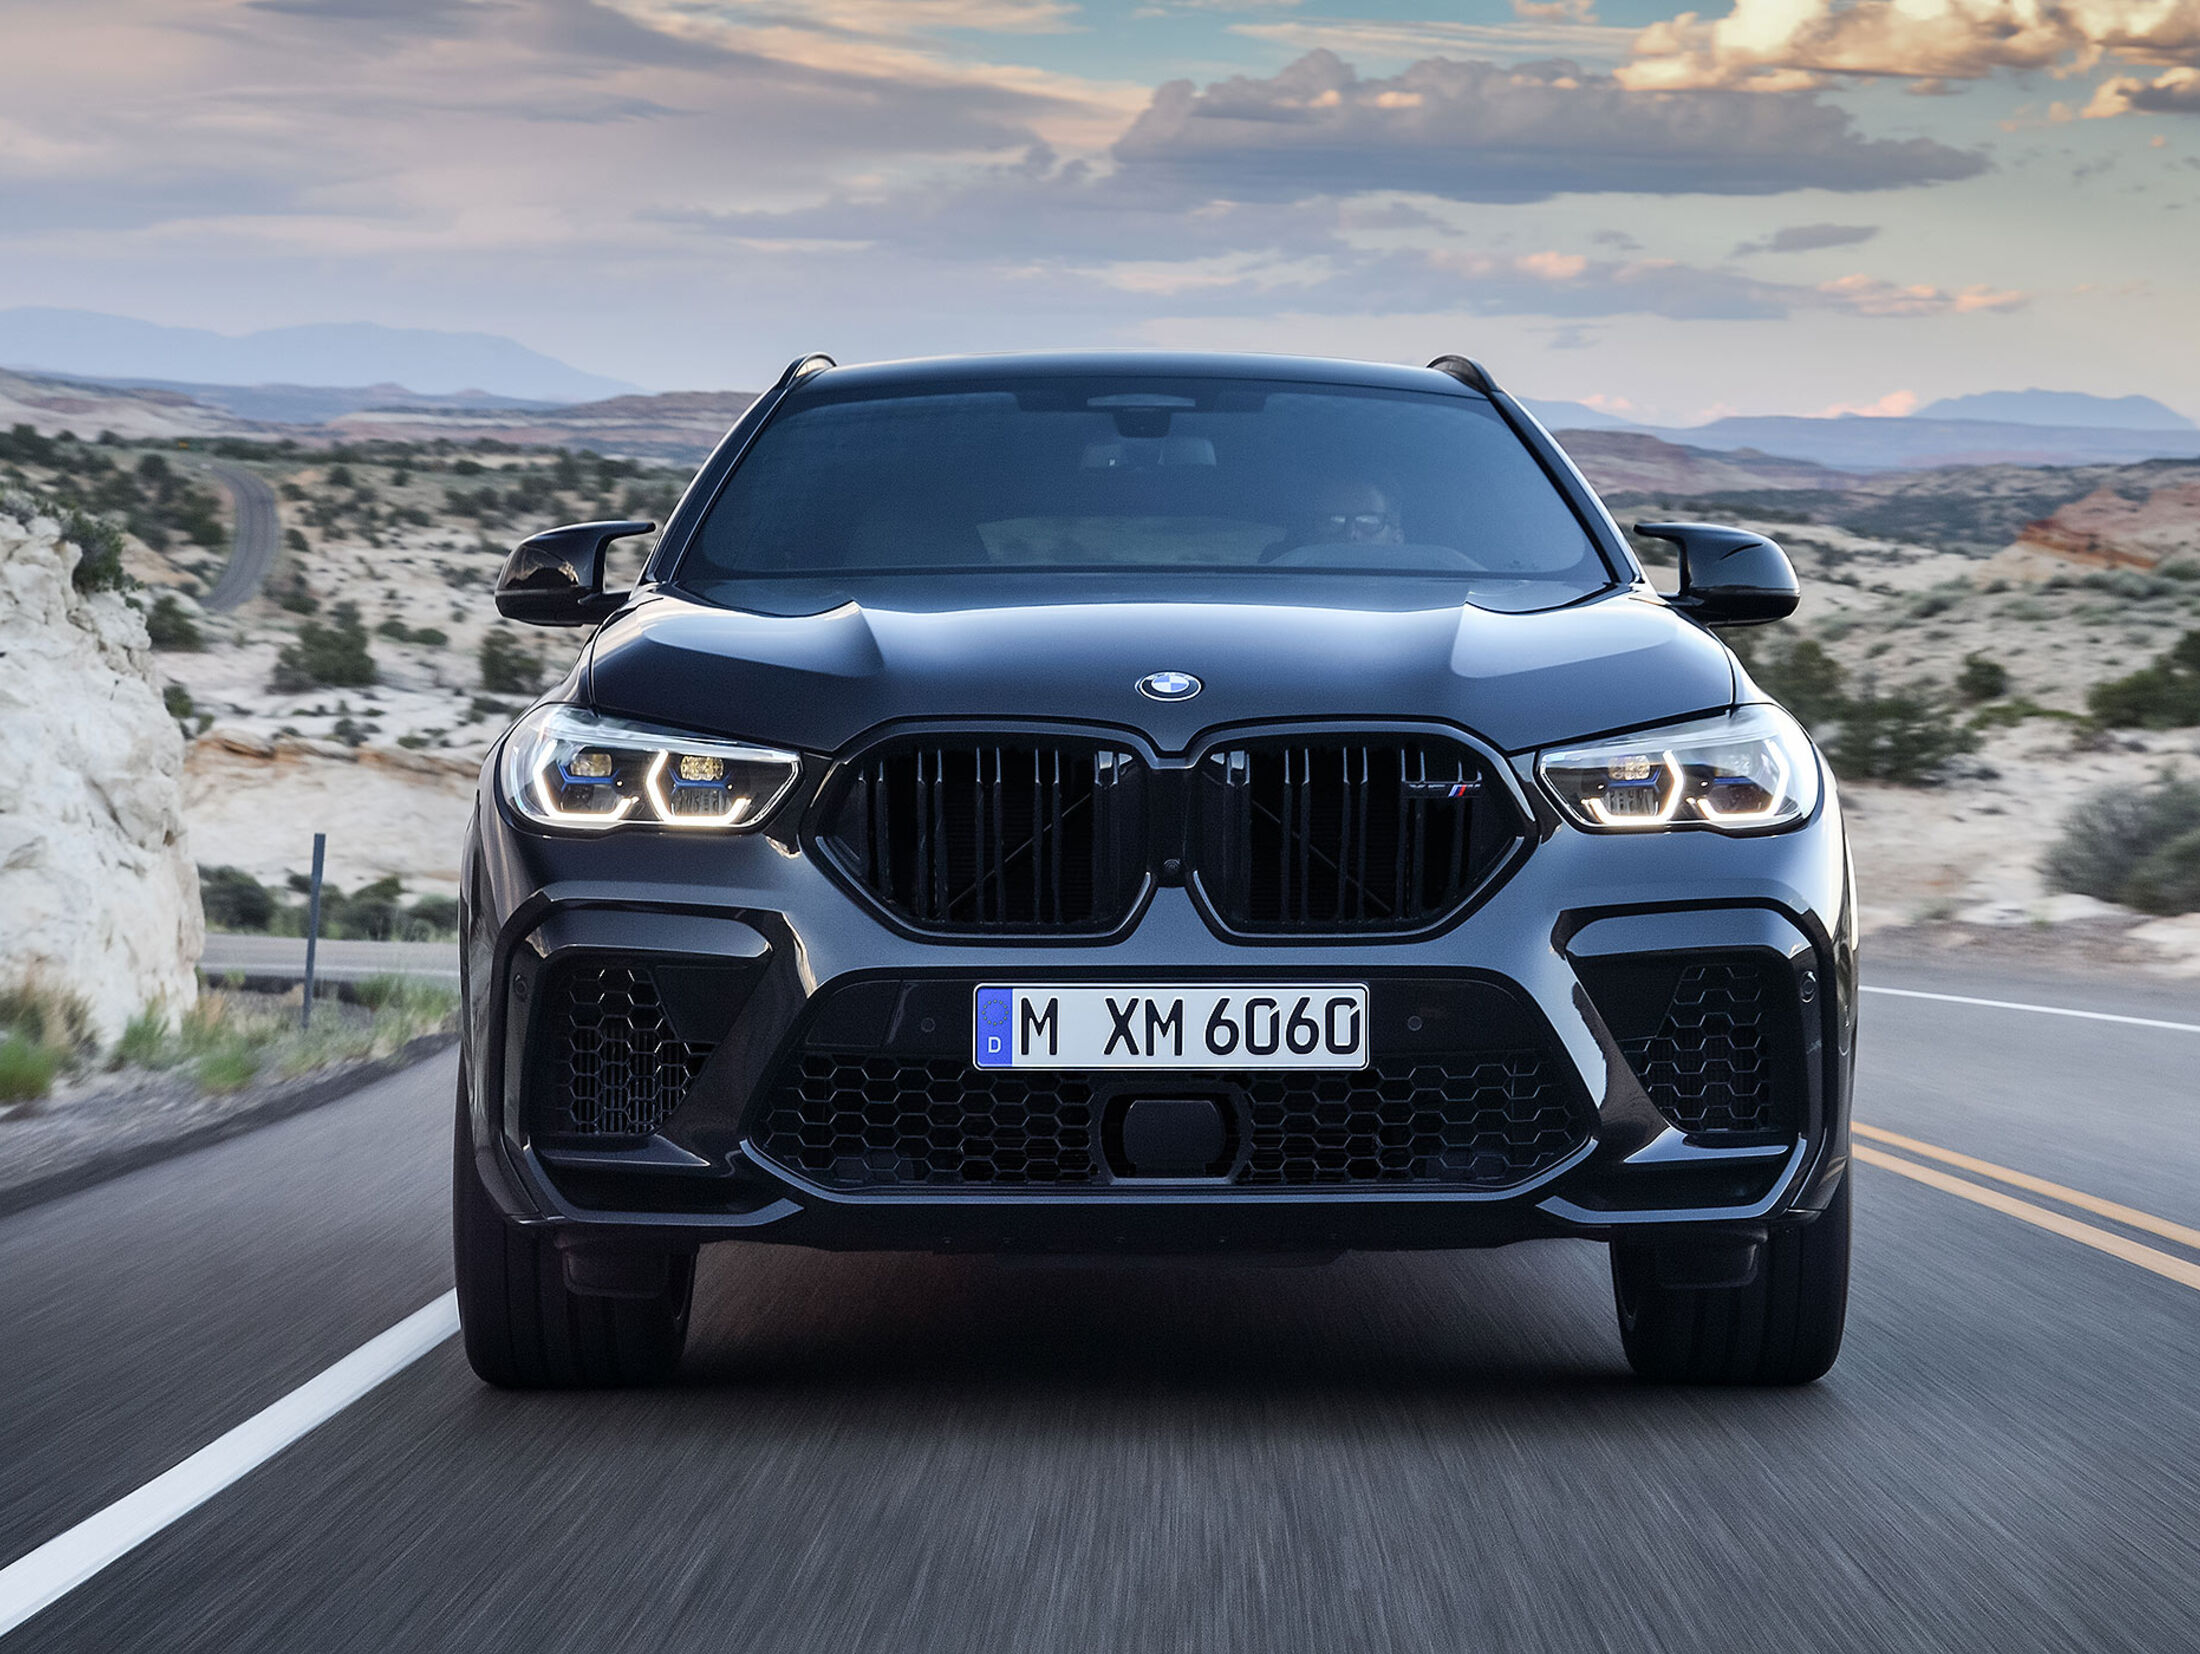 https://imgr1.auto-motor-und-sport.de/BMW-X6-M-Competition-jsonLd4x3-eea3a0dc-1633174.jpg